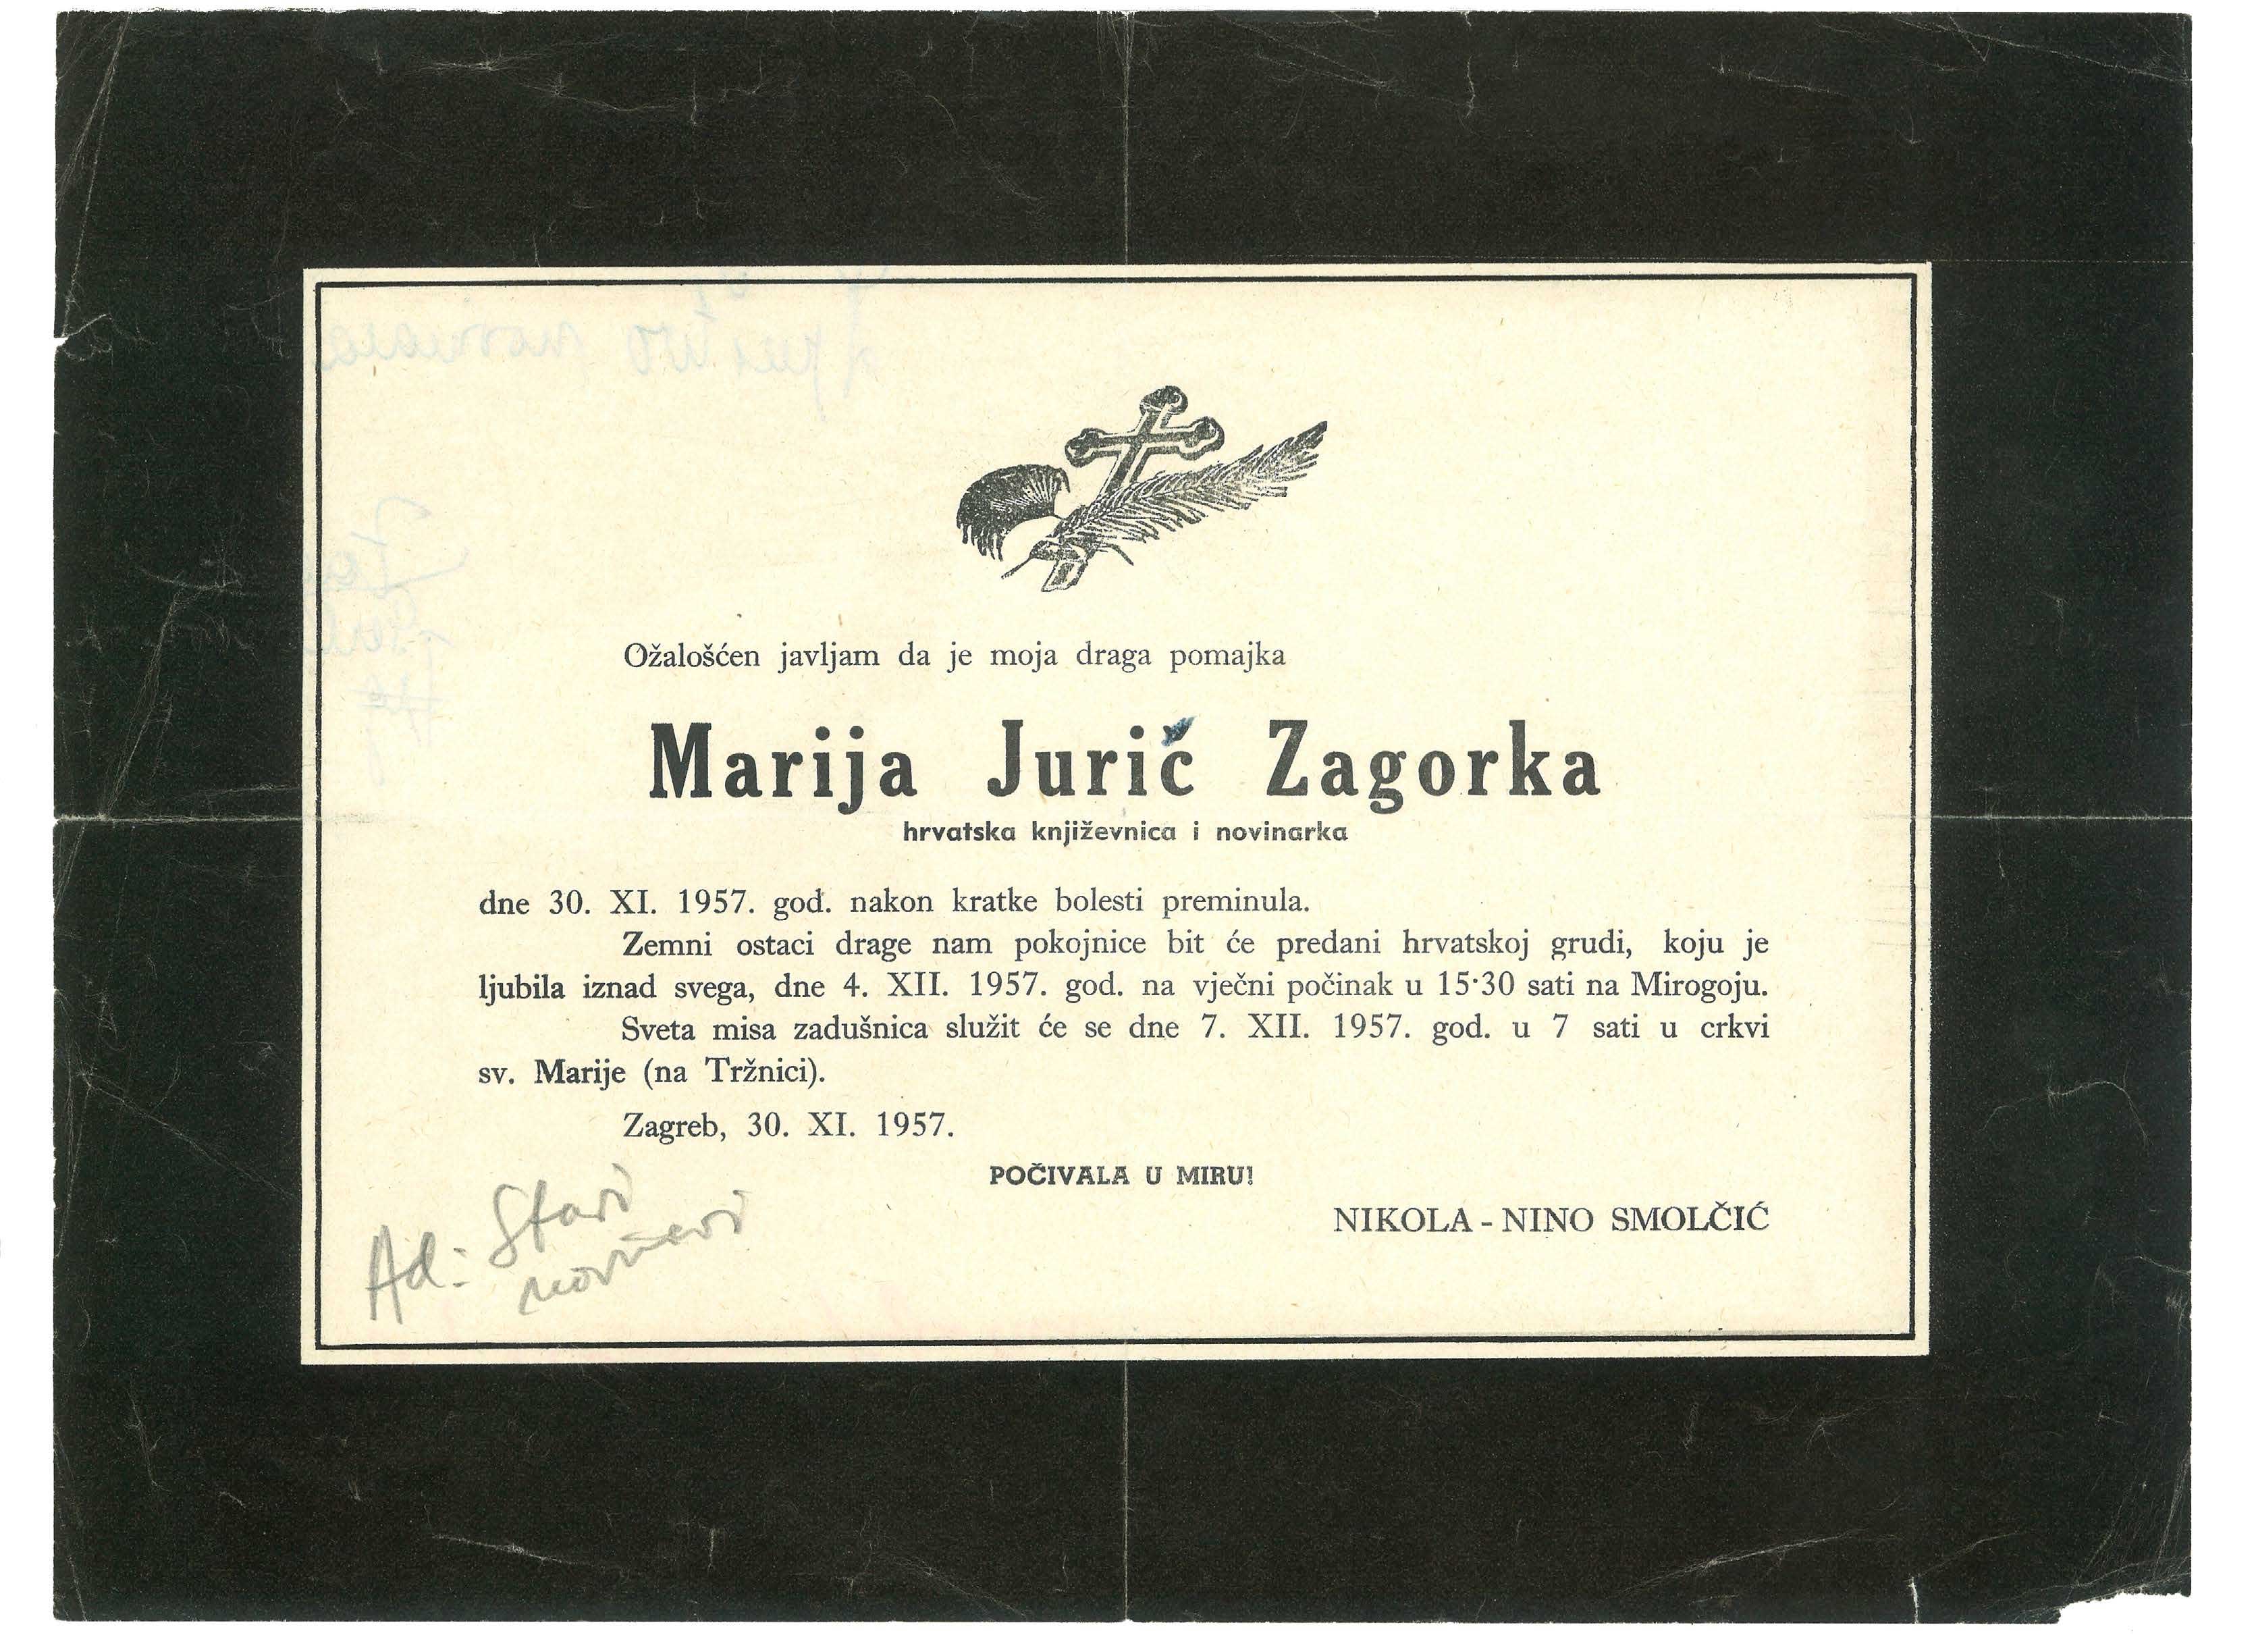 Preminula je u svom stanu na Dolcu gdje je danas uređen memorijalni stan.  
Fotografija osmrtnice Marije Jurić Zagorke preuzeta je iz Arhivskog fonda Memorijalnog stana Marije Jurić Zagorke. 